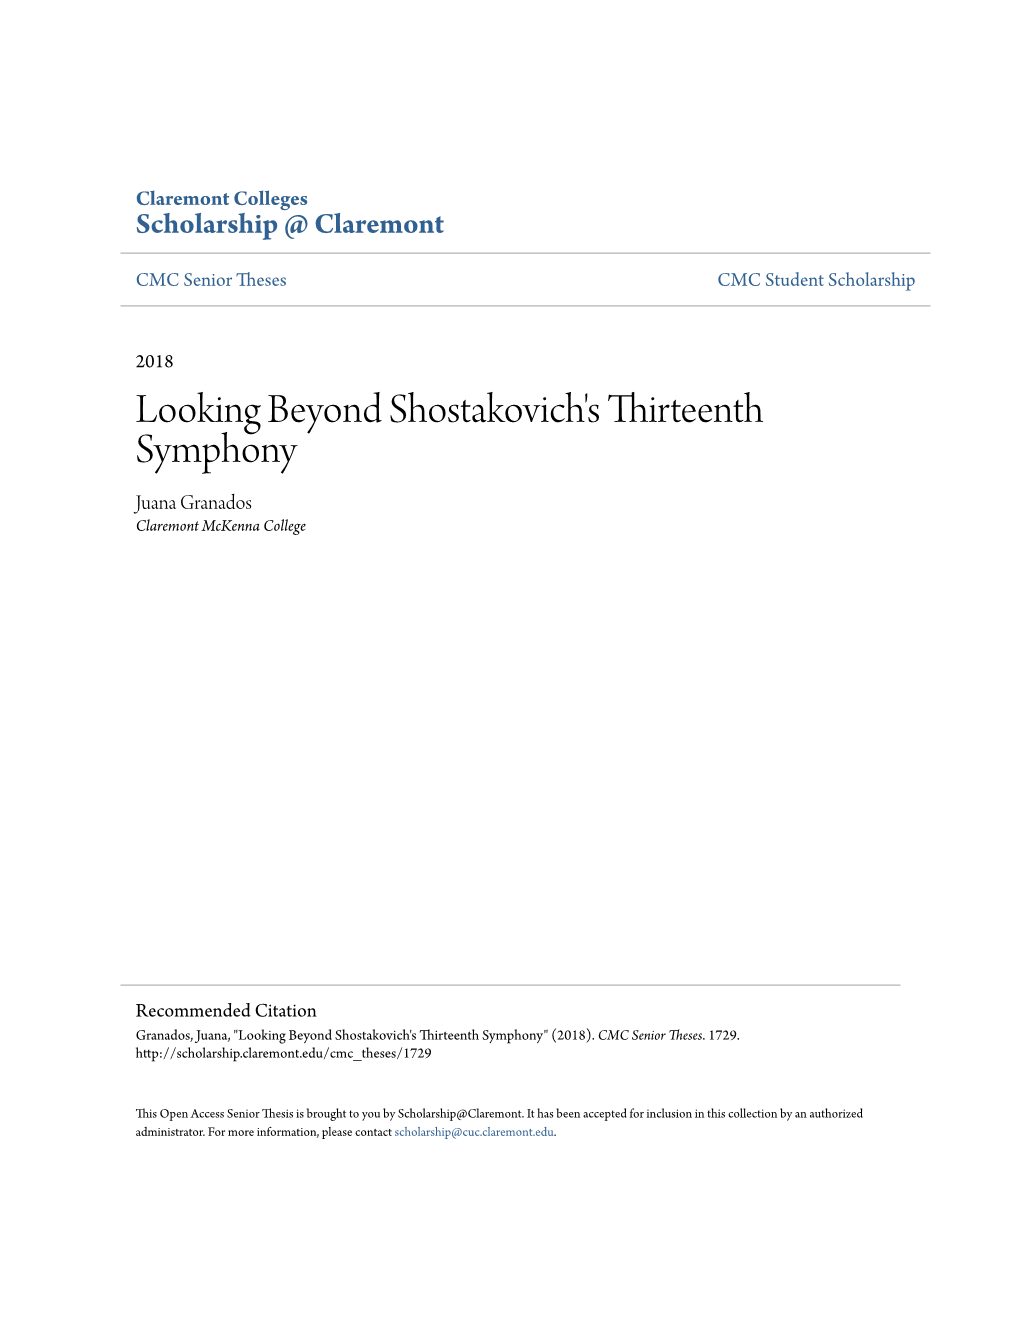 Looking Beyond Shostakovich's Thirteenth Symphony Juana Granados Claremont Mckenna College